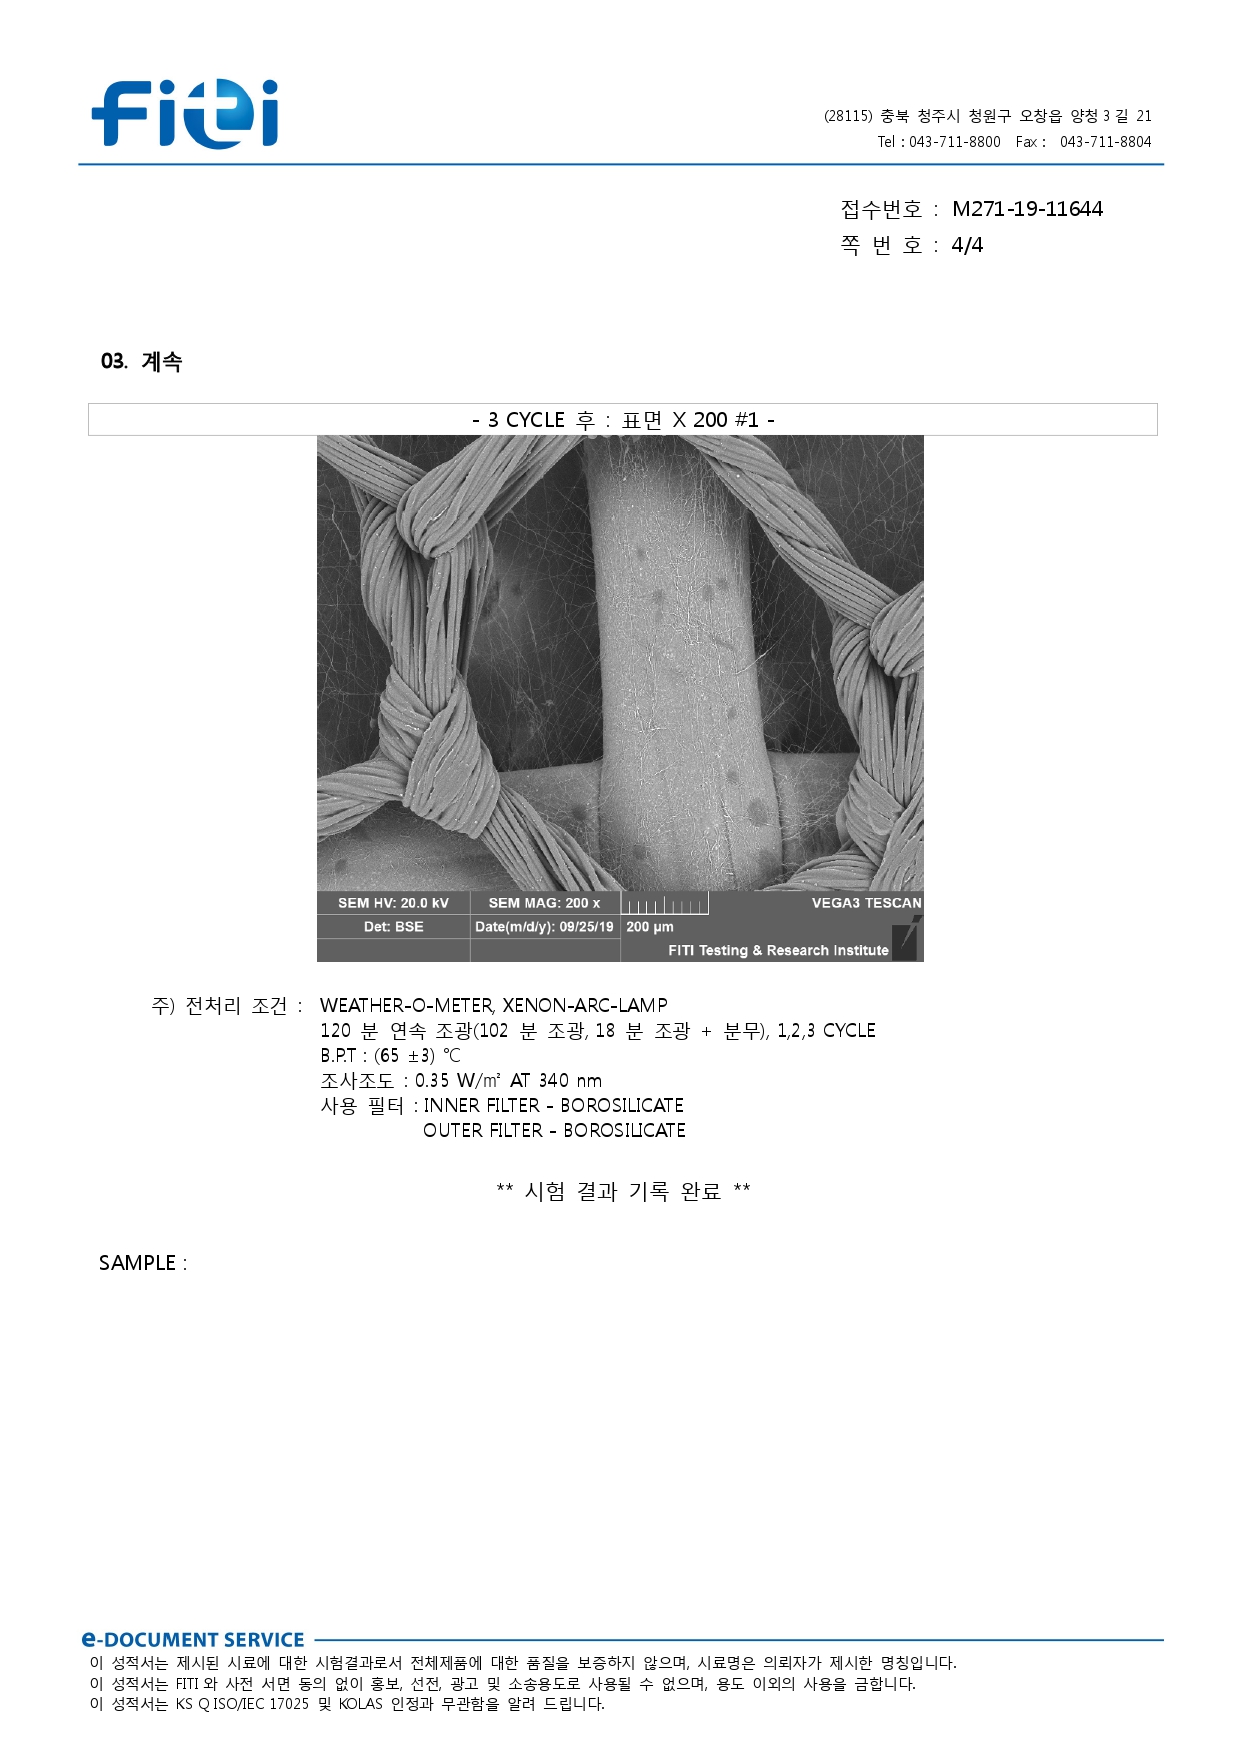 [티엔] 조달청 MAS용 성적서 (4)